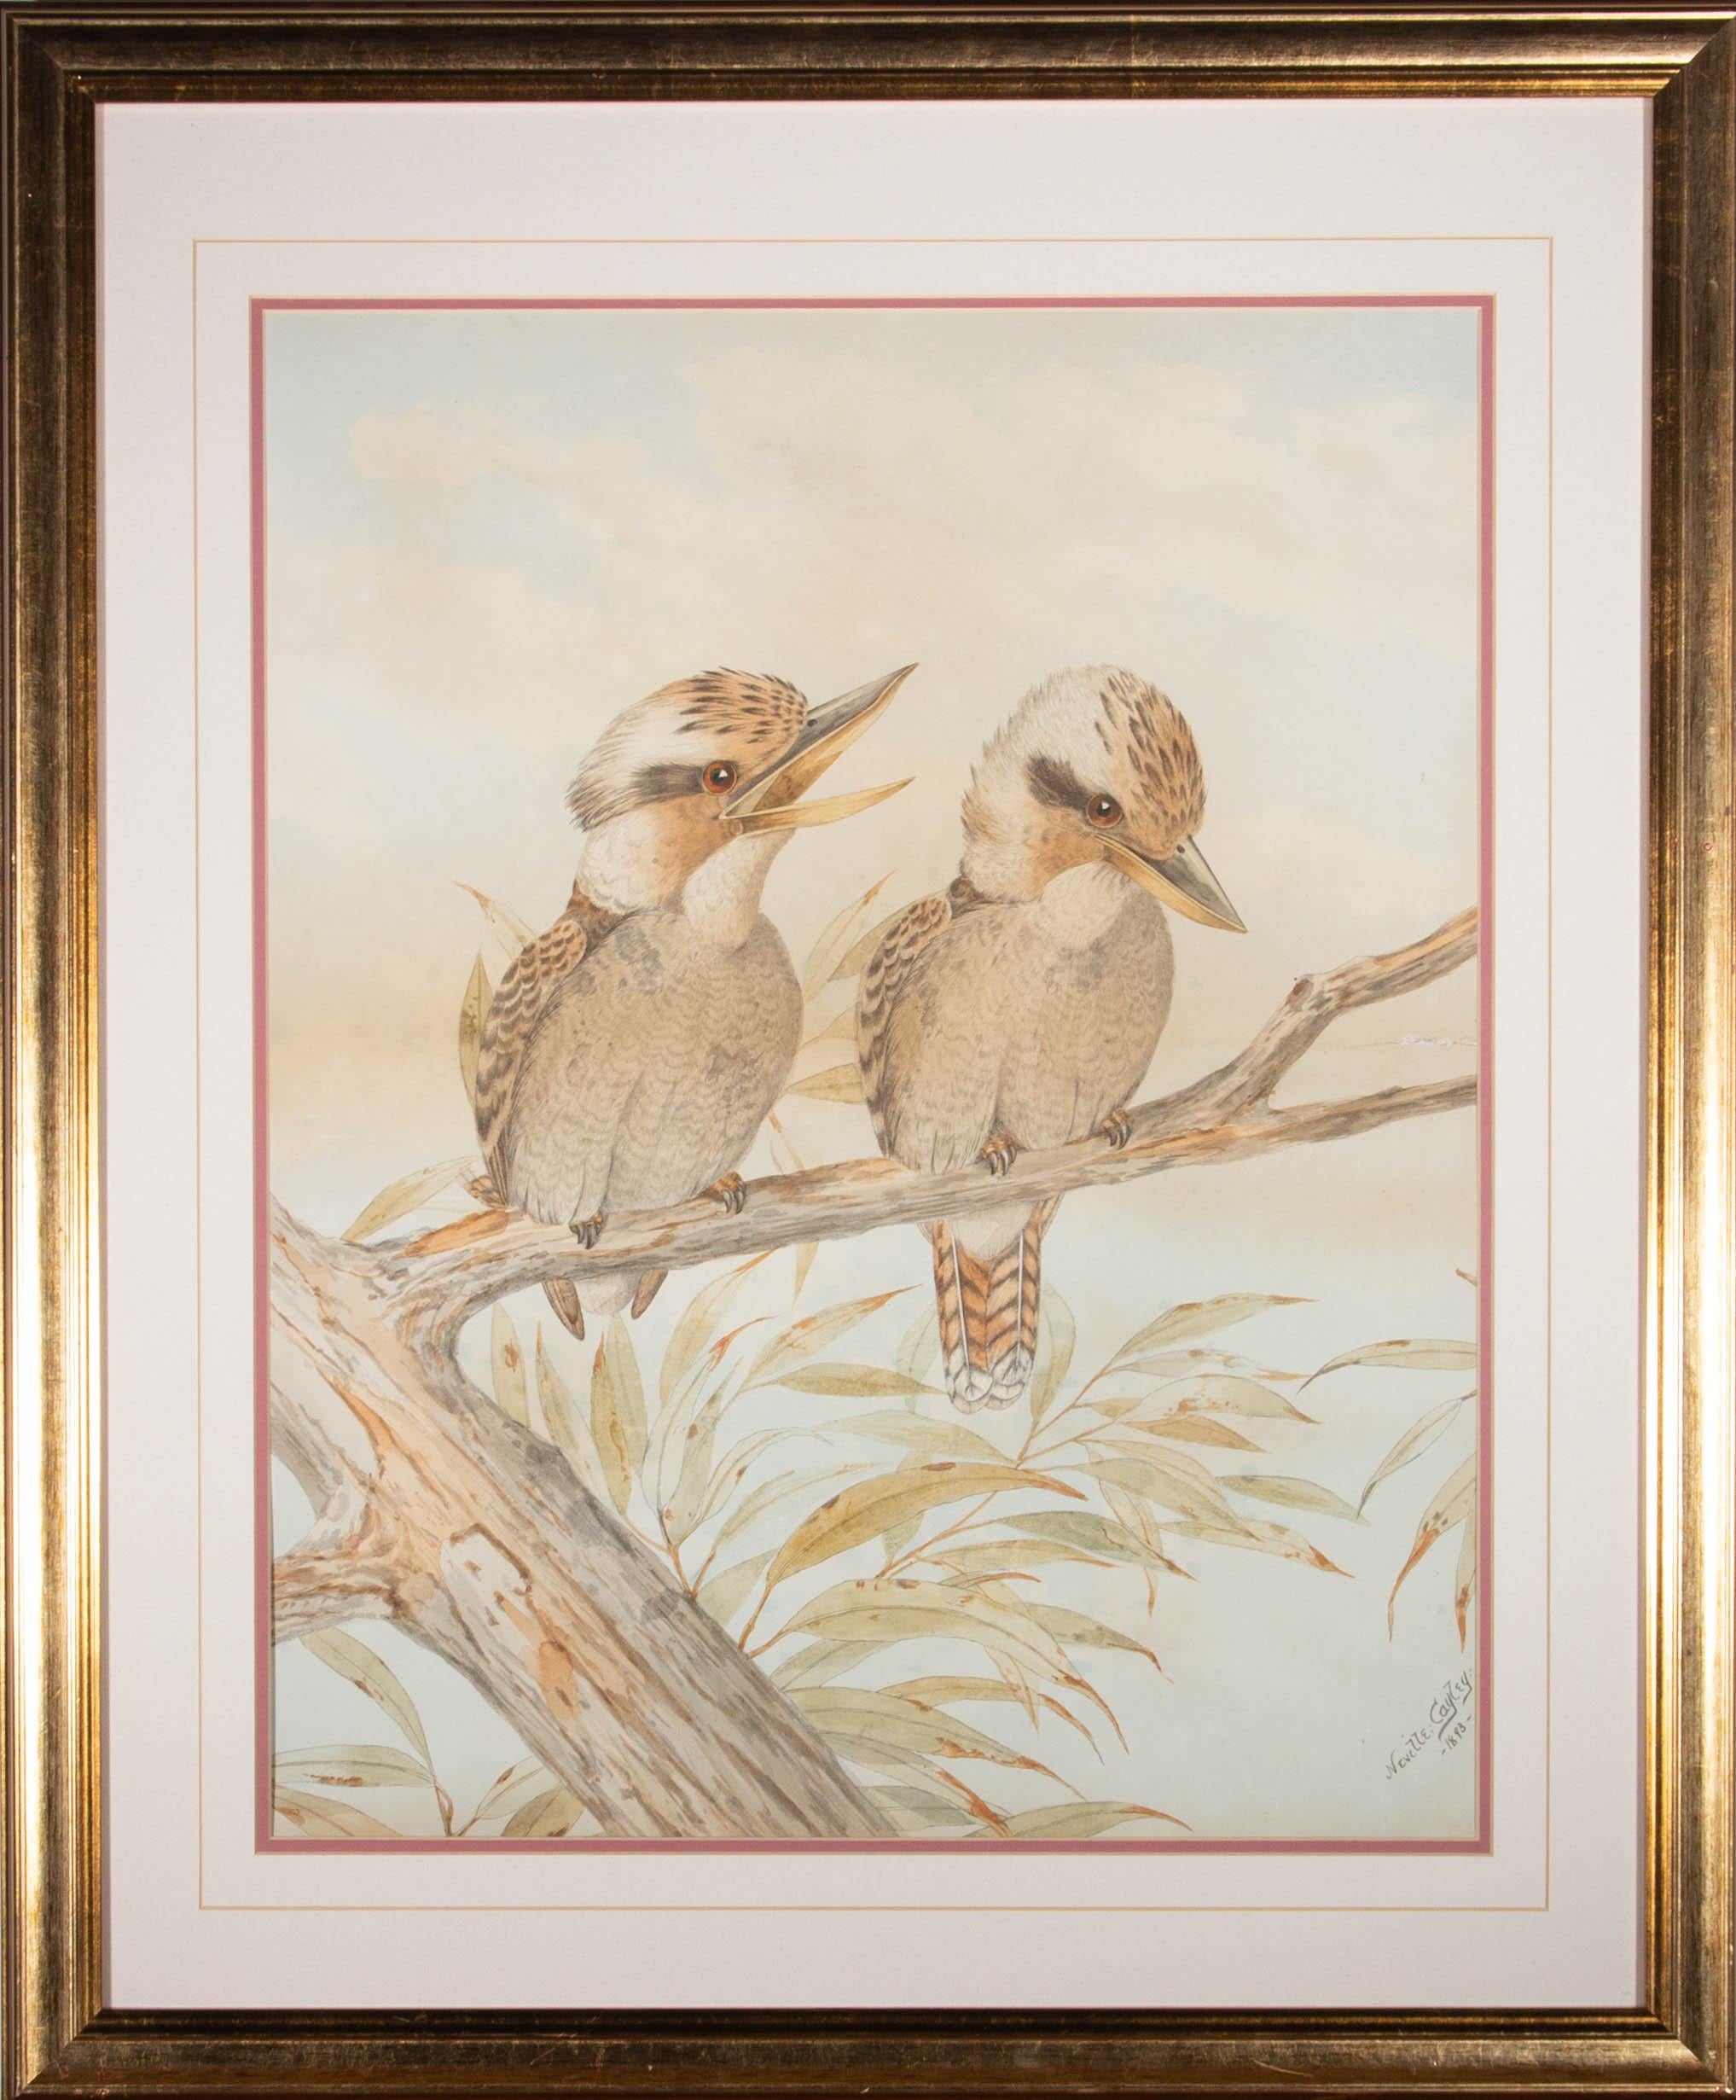 Lithographie colorée à la main représentant un couple de kookaburras perchés sur une branche. Présenté glacé dans une double monture crème et rose et un cadre en bois à effet doré. Signé et daté dans la planche dans le coin inférieur droit. On a